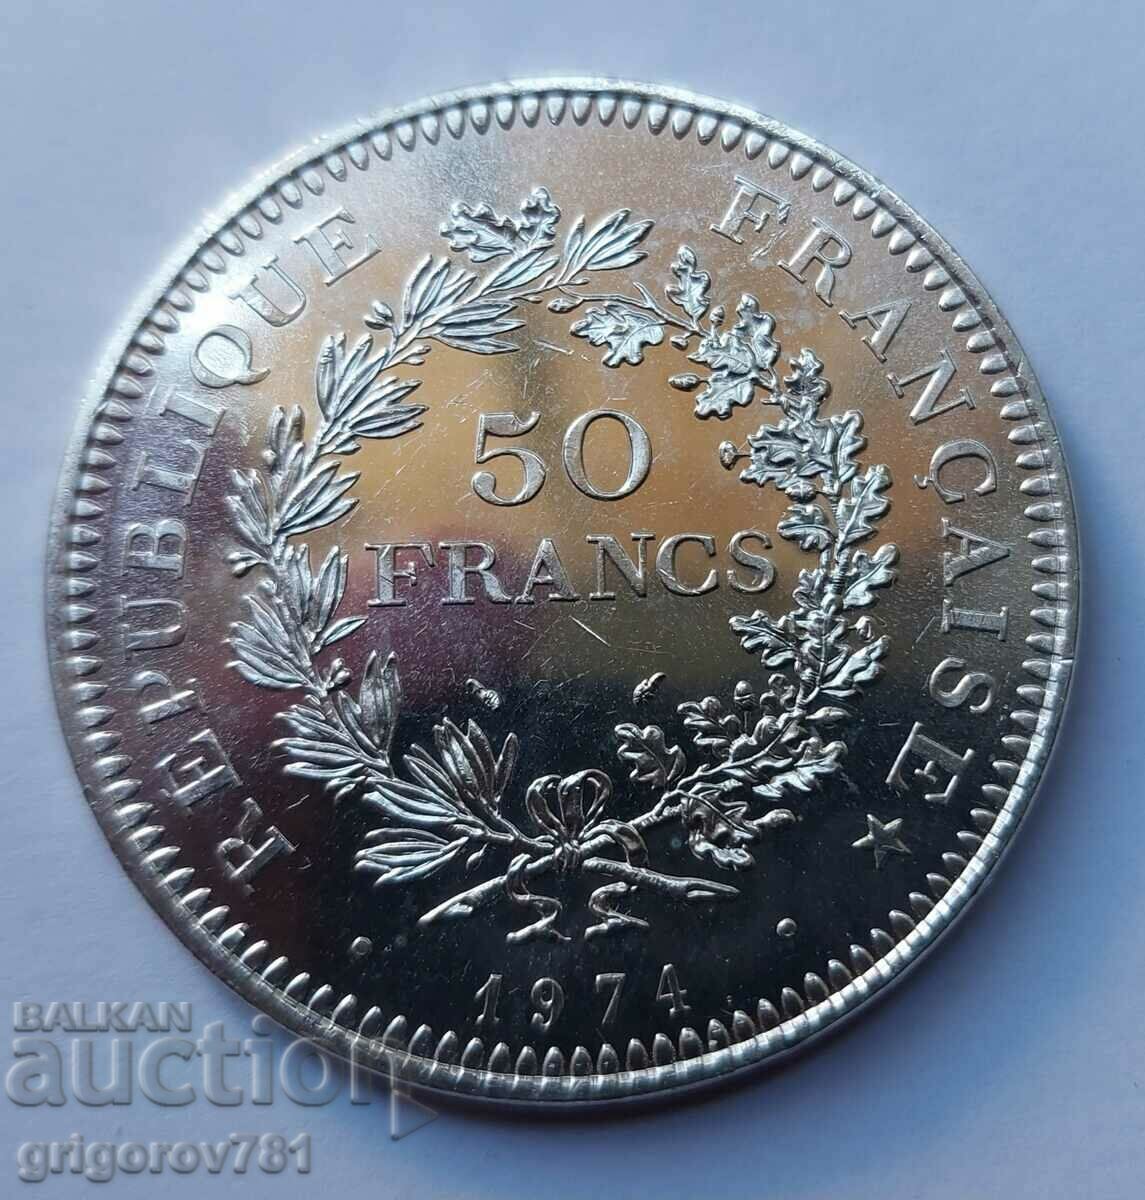 Ασήμι 50 φράγκων Γαλλία 1974 - Ασημένιο νόμισμα #28